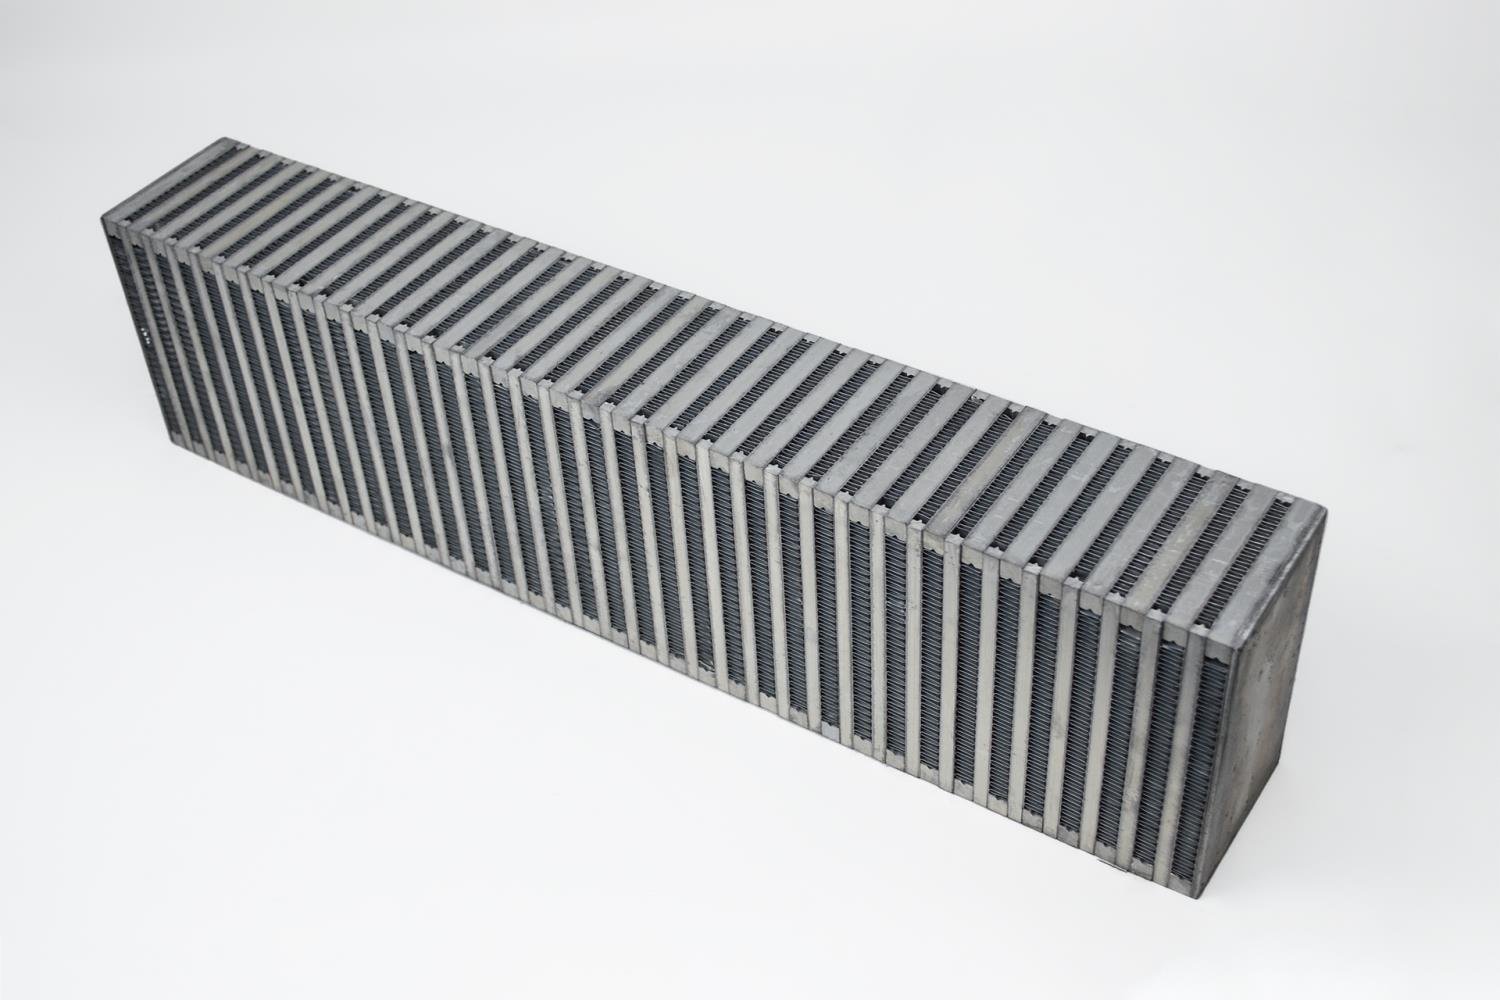 High-Performance Bar & Plate Intercooler Core, 24" x 6" x 3.50", Vertical Flow, Universal Core